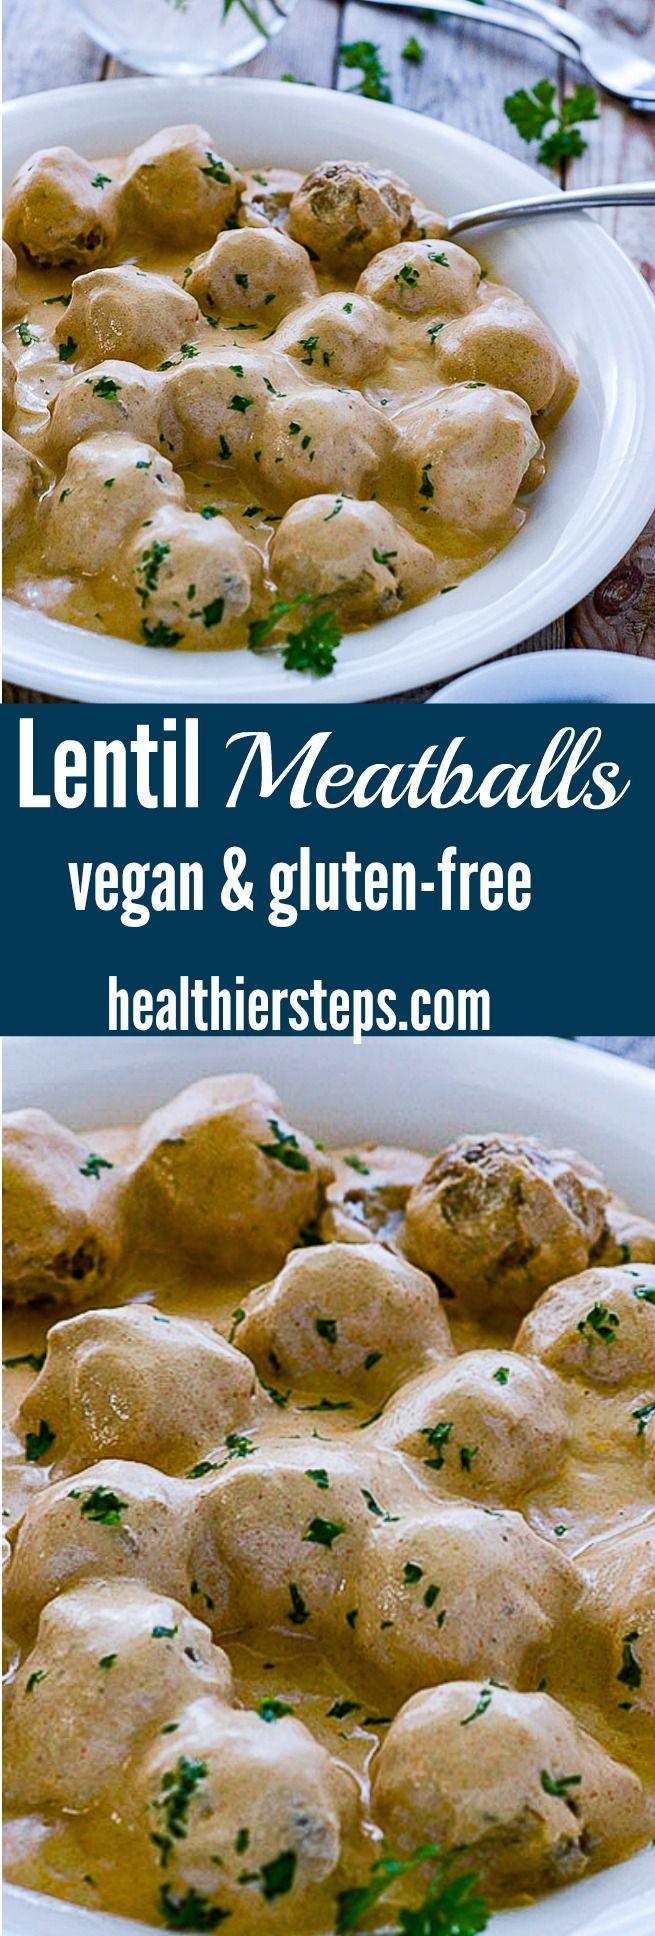 Lentil Meatballs Vegan, Gluten-Free